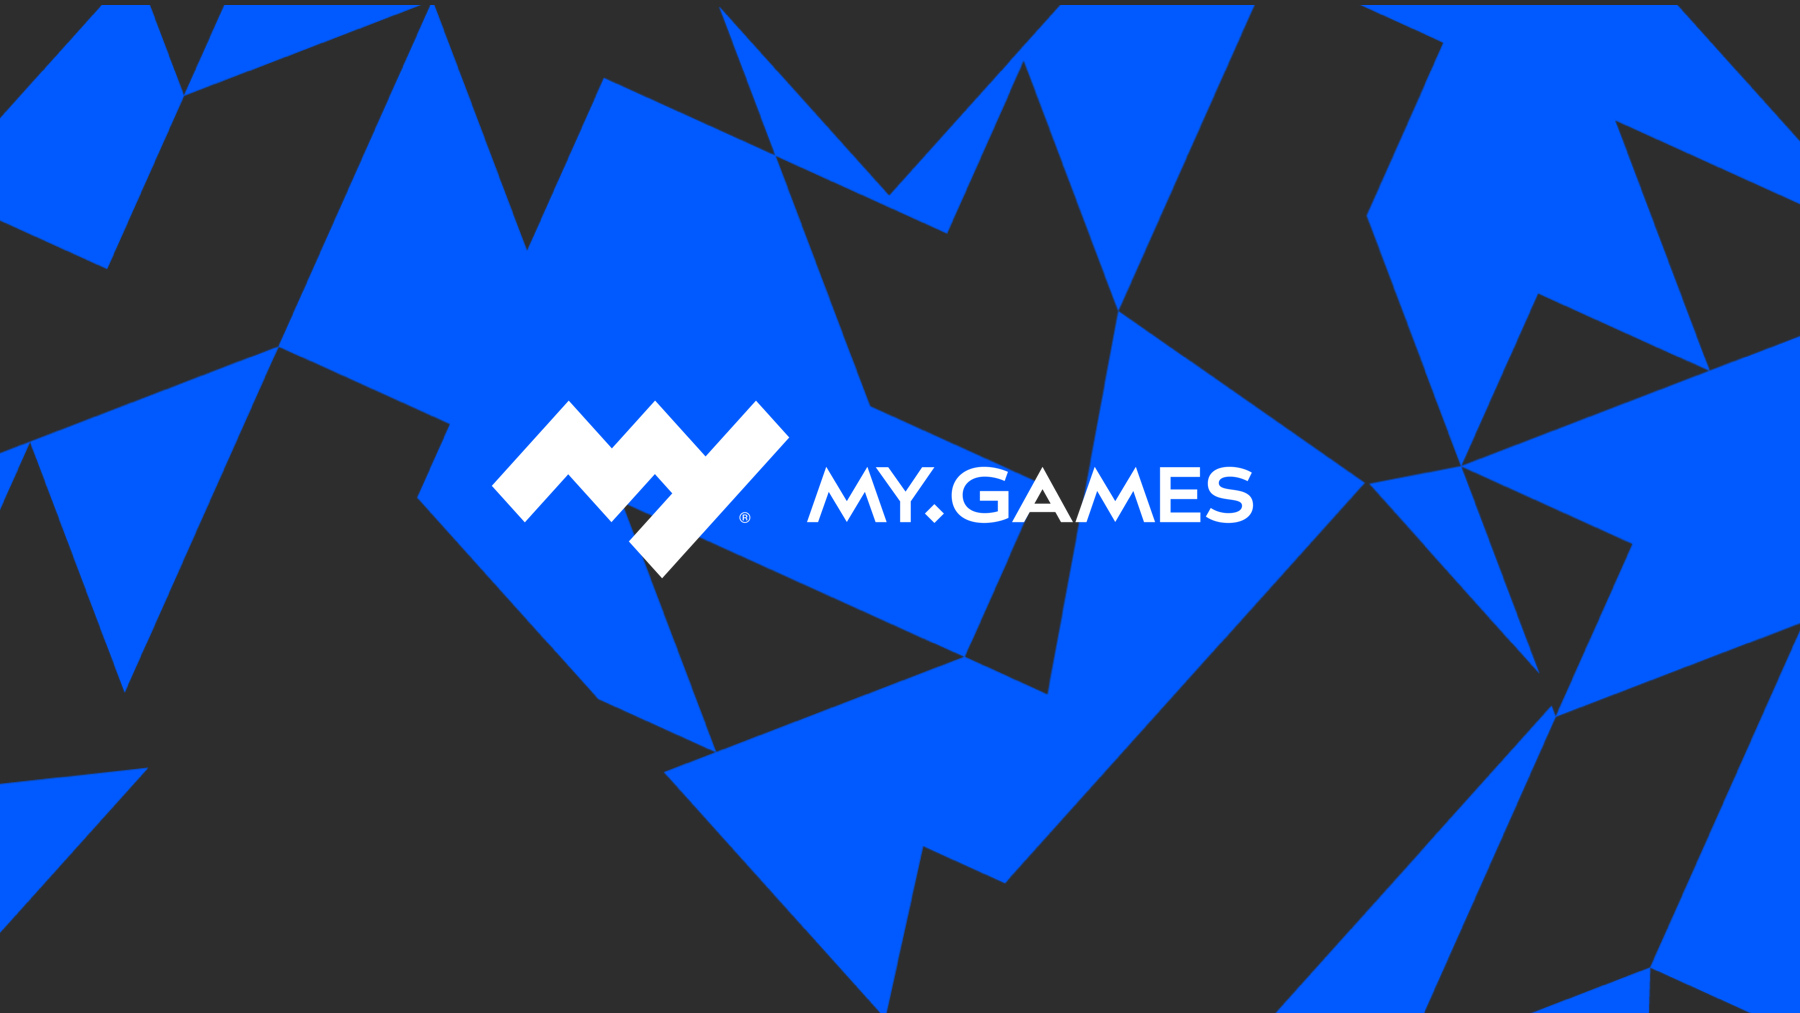 MY.GAMES | Startseite